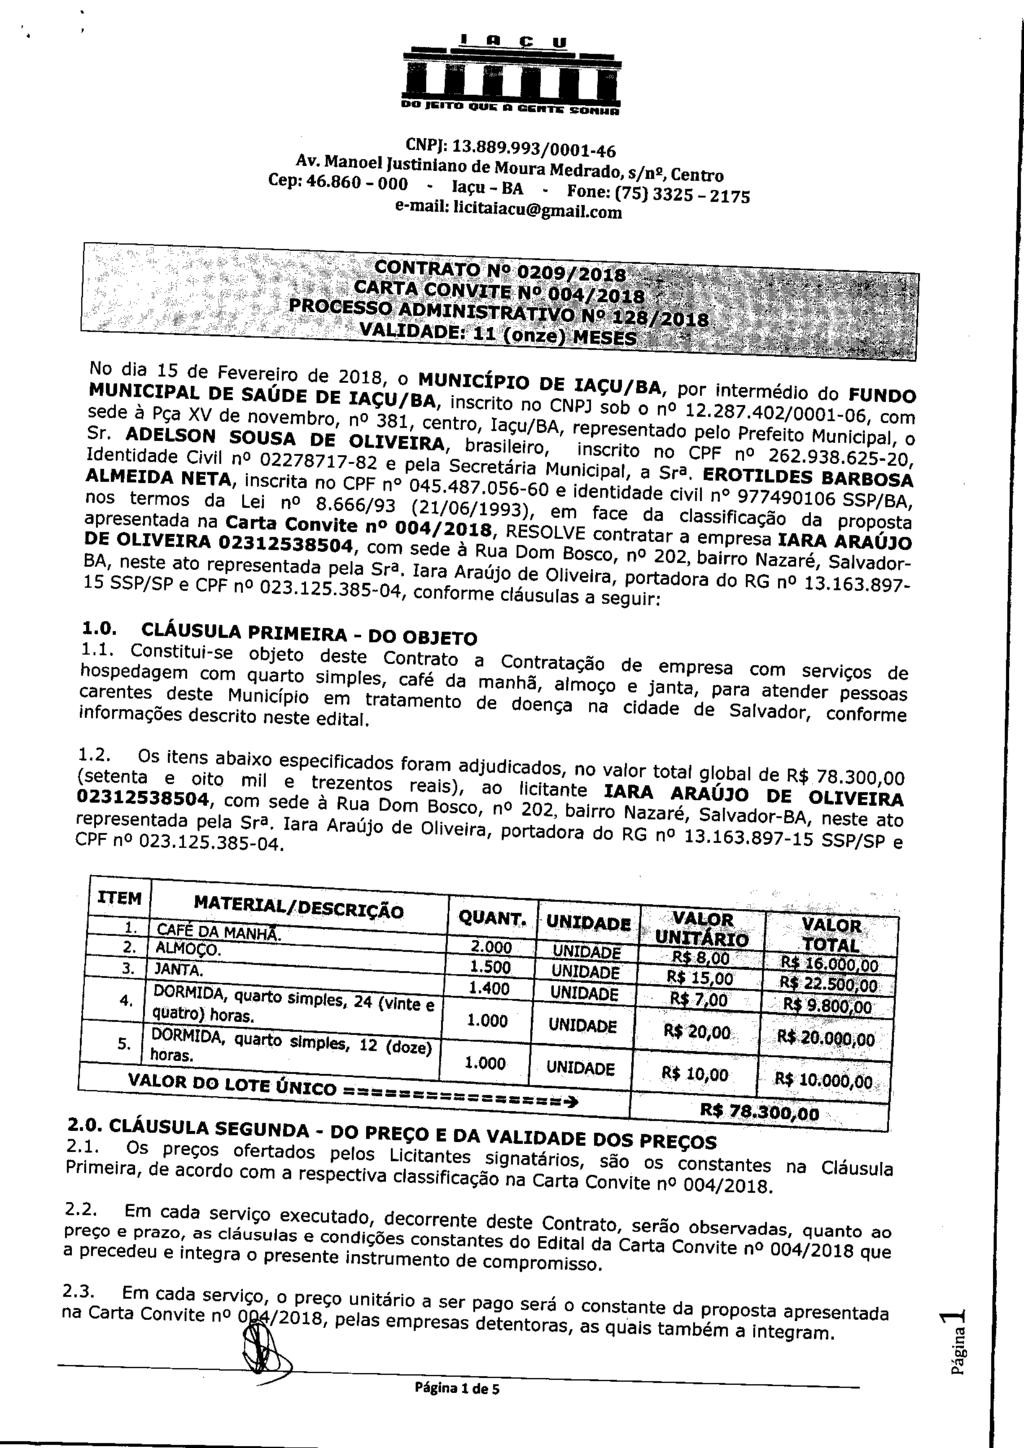 CNPJ: X3.889.993/0001-46 Av. Manoel lustinjano de Moura Medrado, s/n2. Centro Cep: 46.